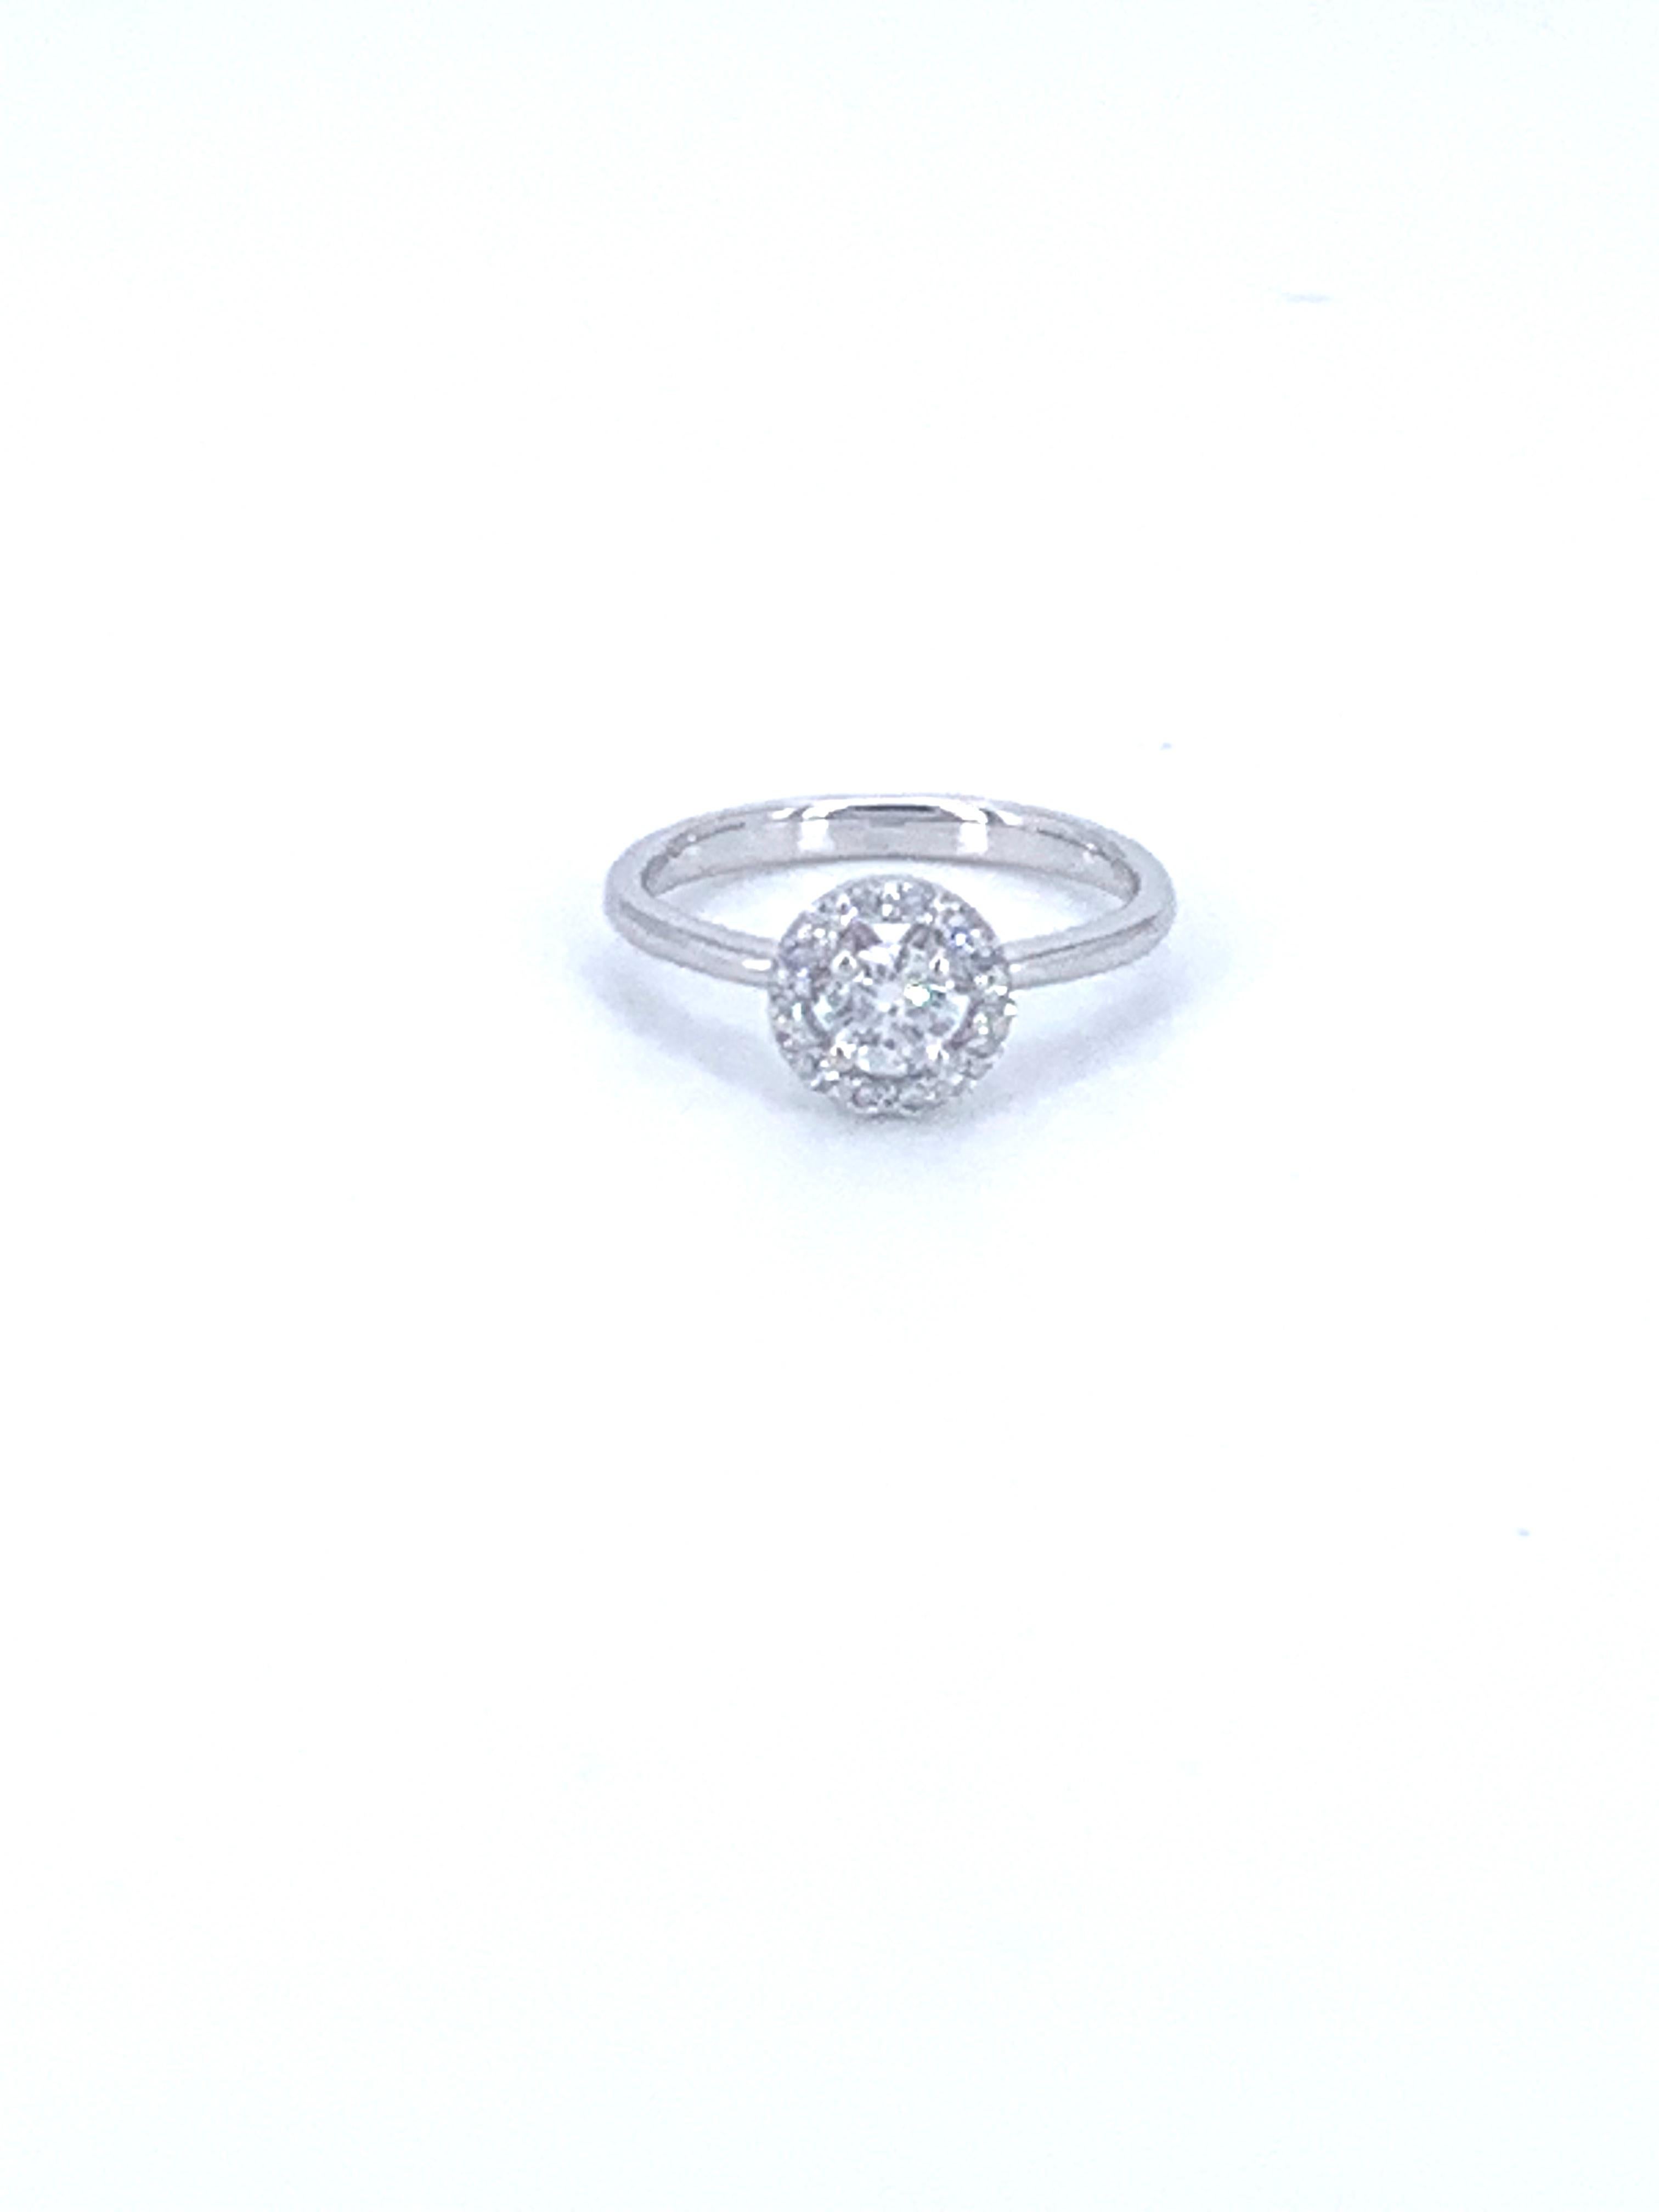 Cette bague solitaire en diamant de 0,55 carat est issue de la Jennifer Collection et est fabriquée à 100 % en Italie à partir de diamants non conflictuels. 
 
Sertie d'or blanc 18 carats, la bague rayonne de luminosité et de beauté au doigt.

Le